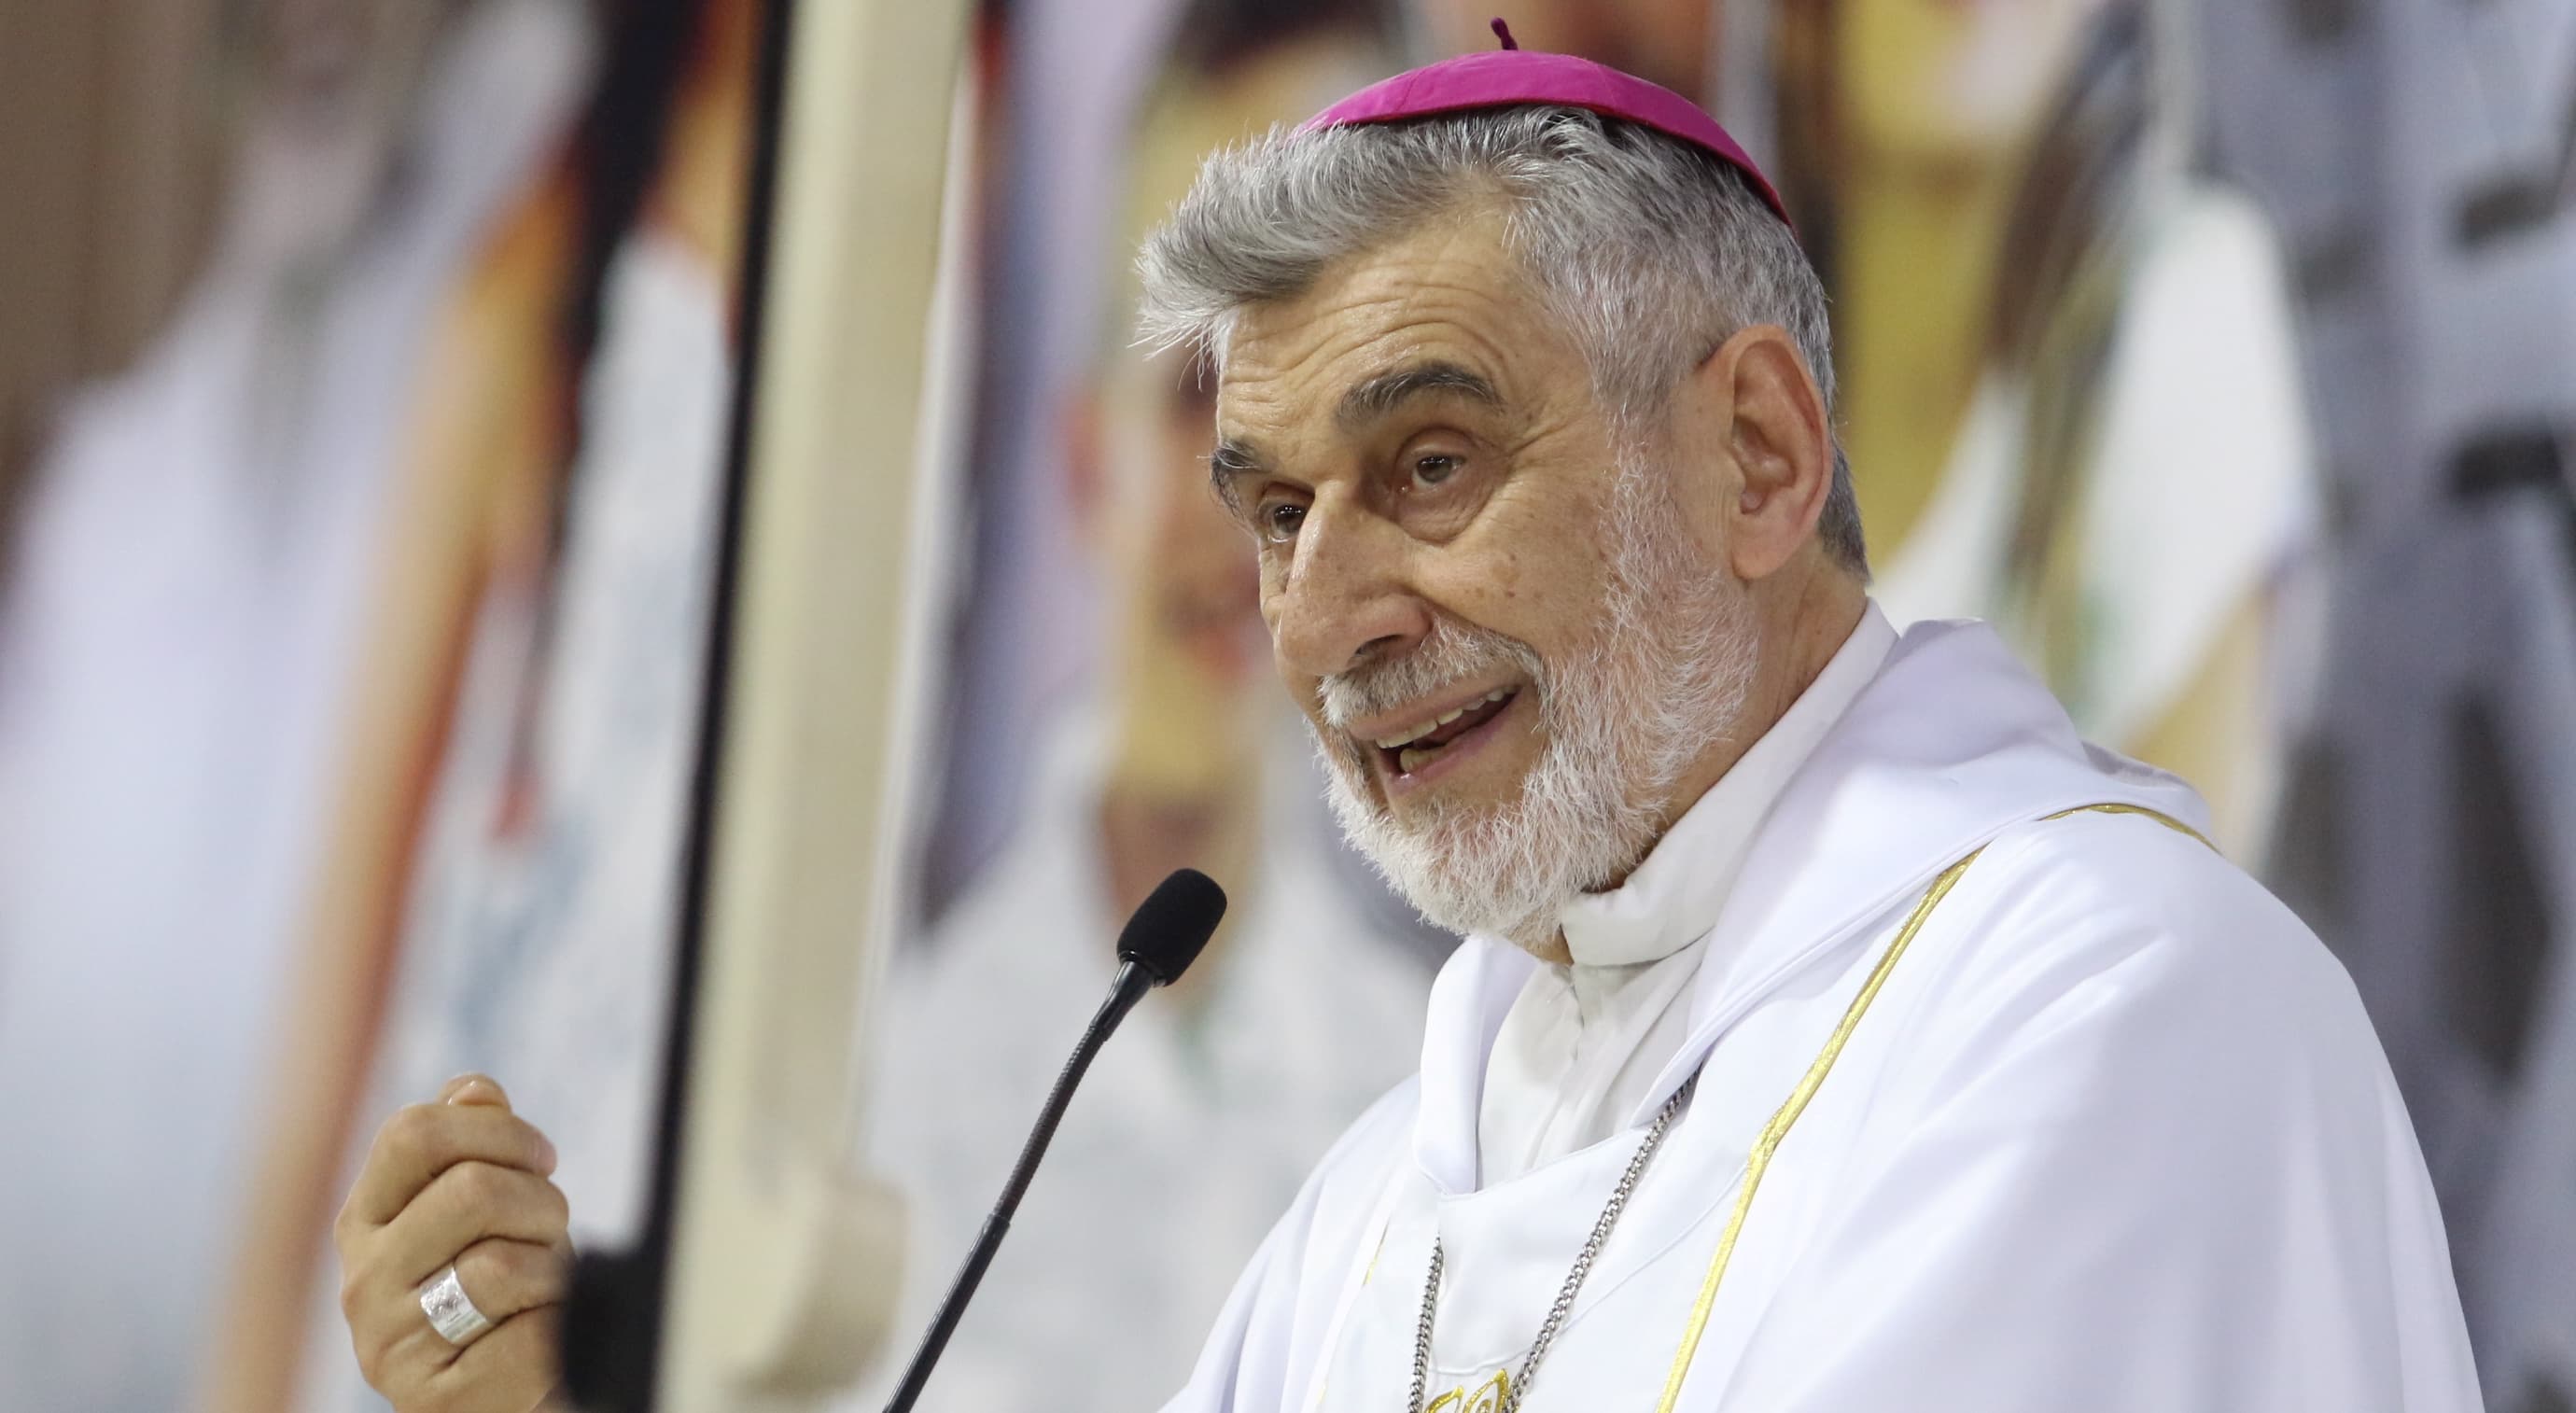 Iglesia Católica pide orar por la Chiquitania porque está "herida de muerte"